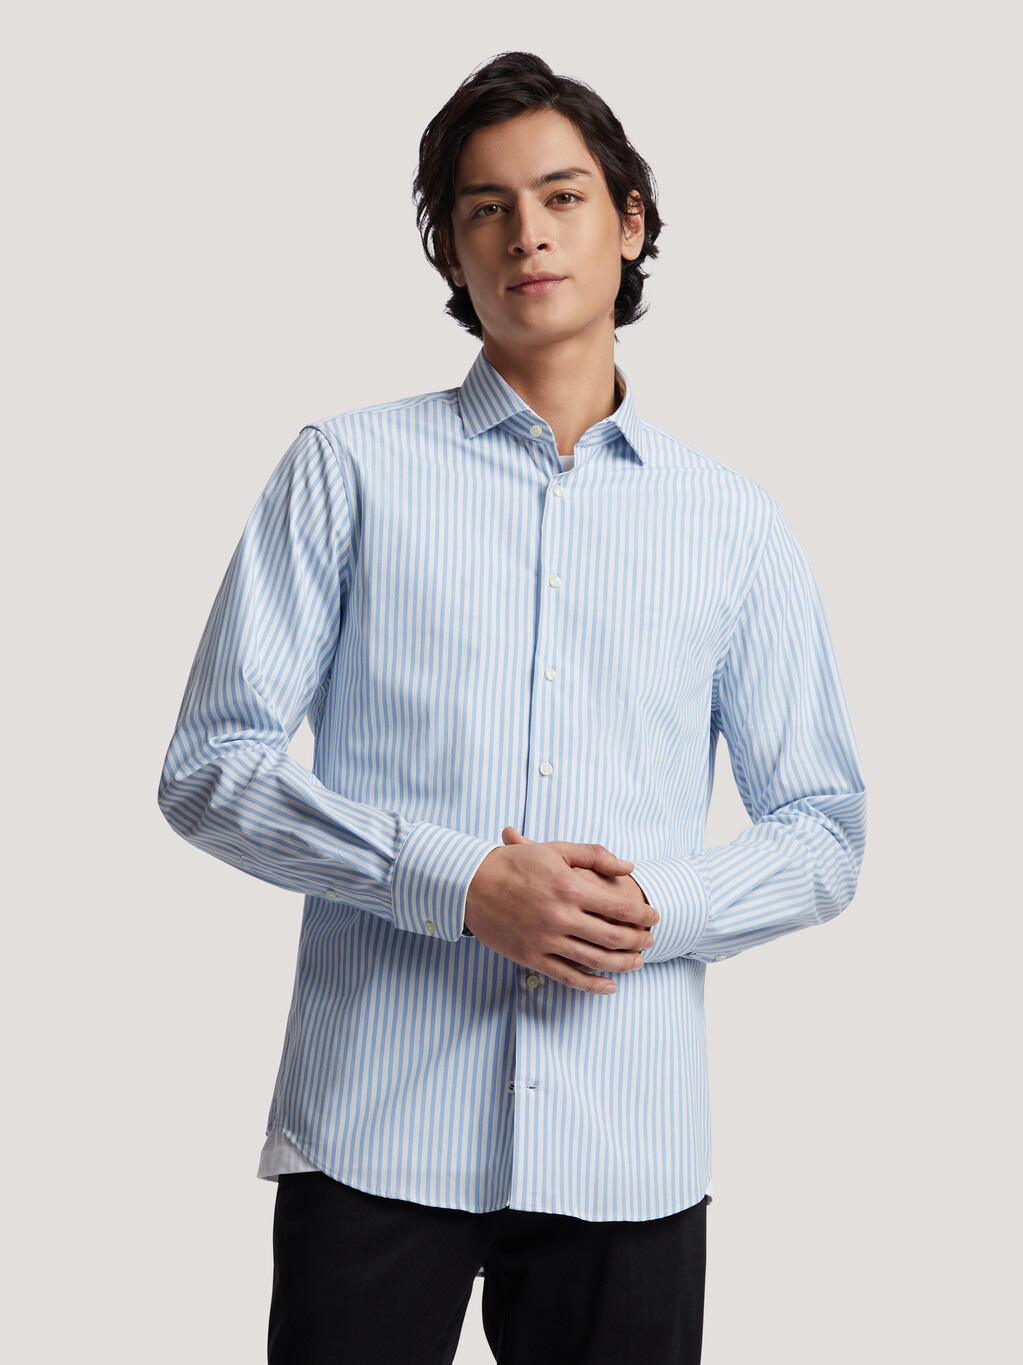 Regular Fit Poplin shirt - Light blue/White striped - Men